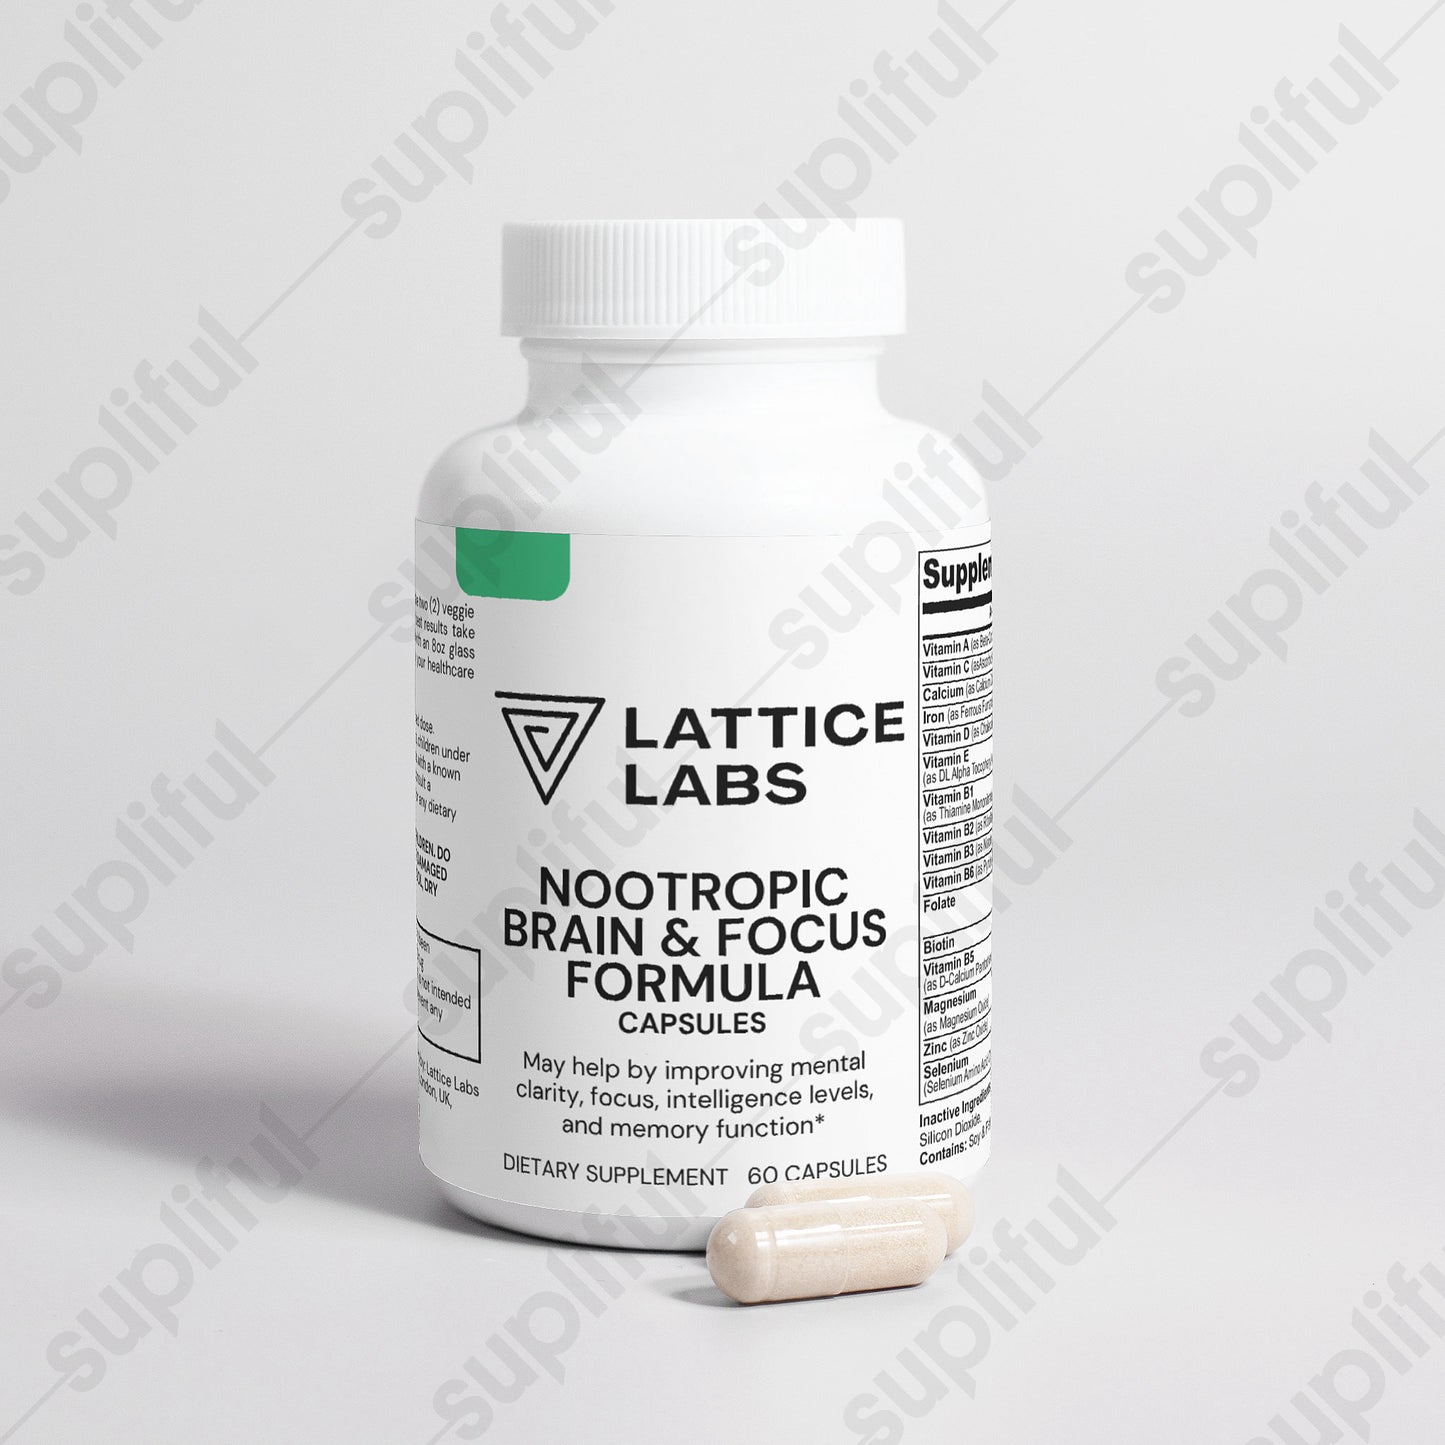 Lattice Labs Nootropic Brain & Focus Formula